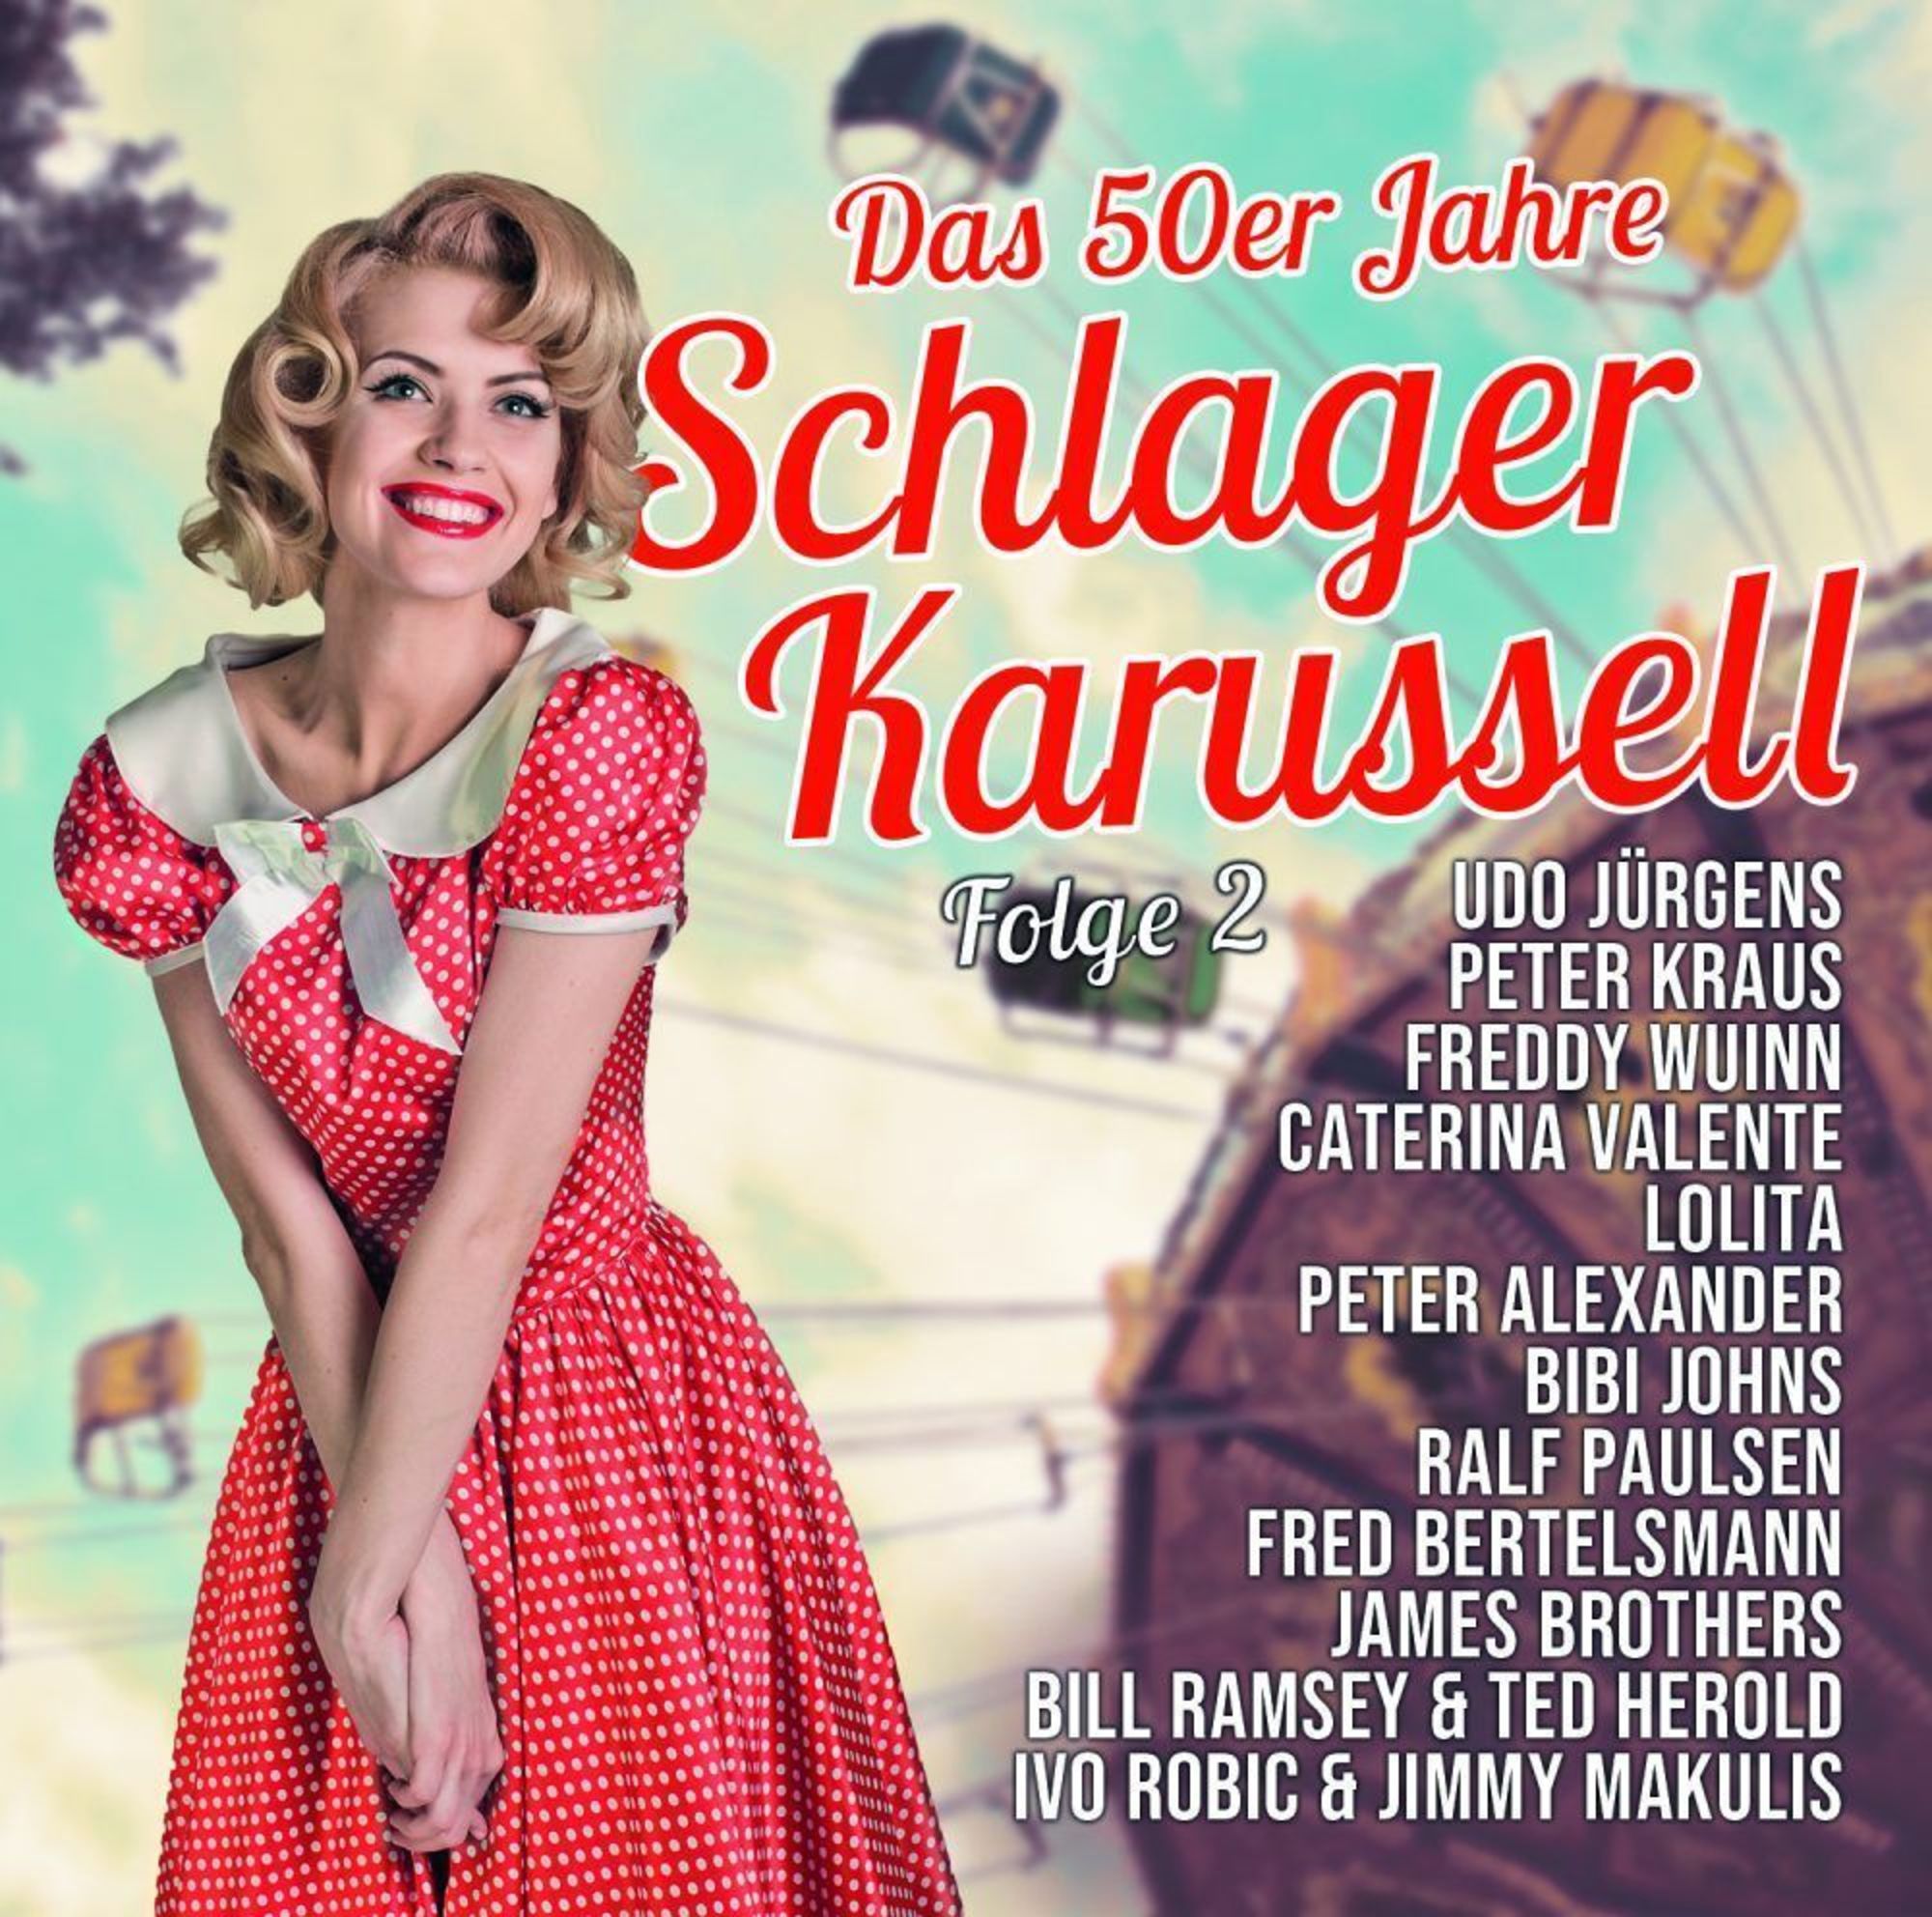 Das 50er Jahre Schlager Karussell Vol.2' von 'Various' auf 'CD